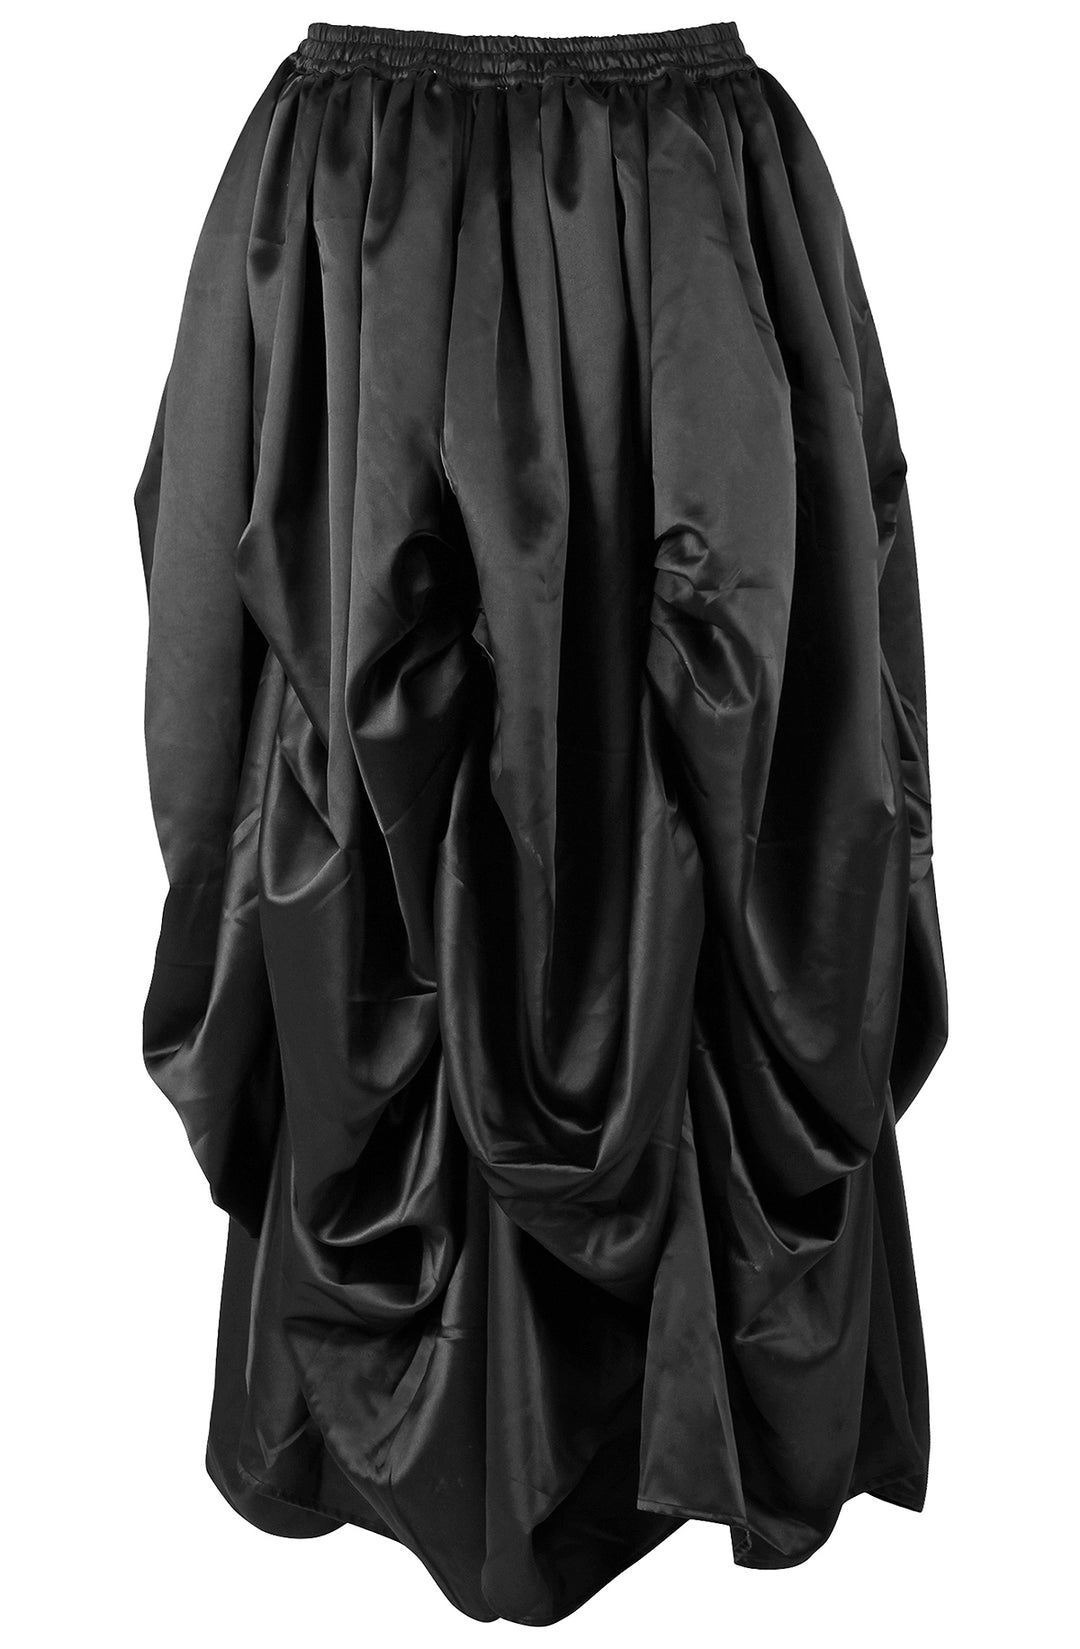 Slipper Satin Black Ball Gown Skirt 3